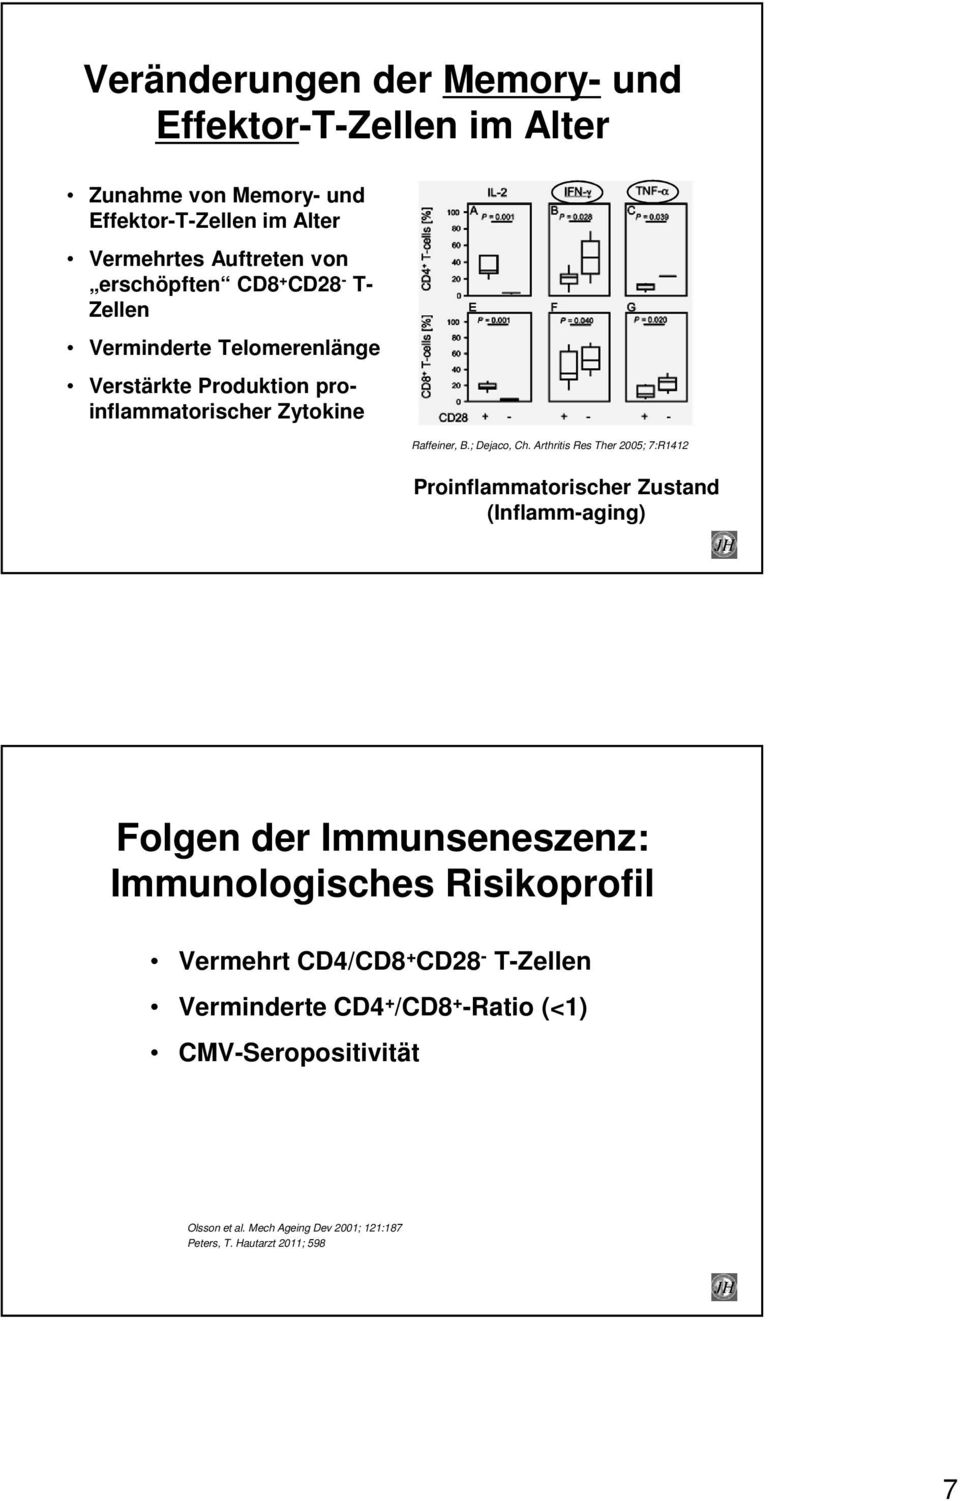 Arthritis Res Ther 2005; 7:R1412 Proinflammatorischer Zustand (Inflamm-aging) Folgen der Immunseneszenz: Immunologisches Risikoprofil Vermehrt